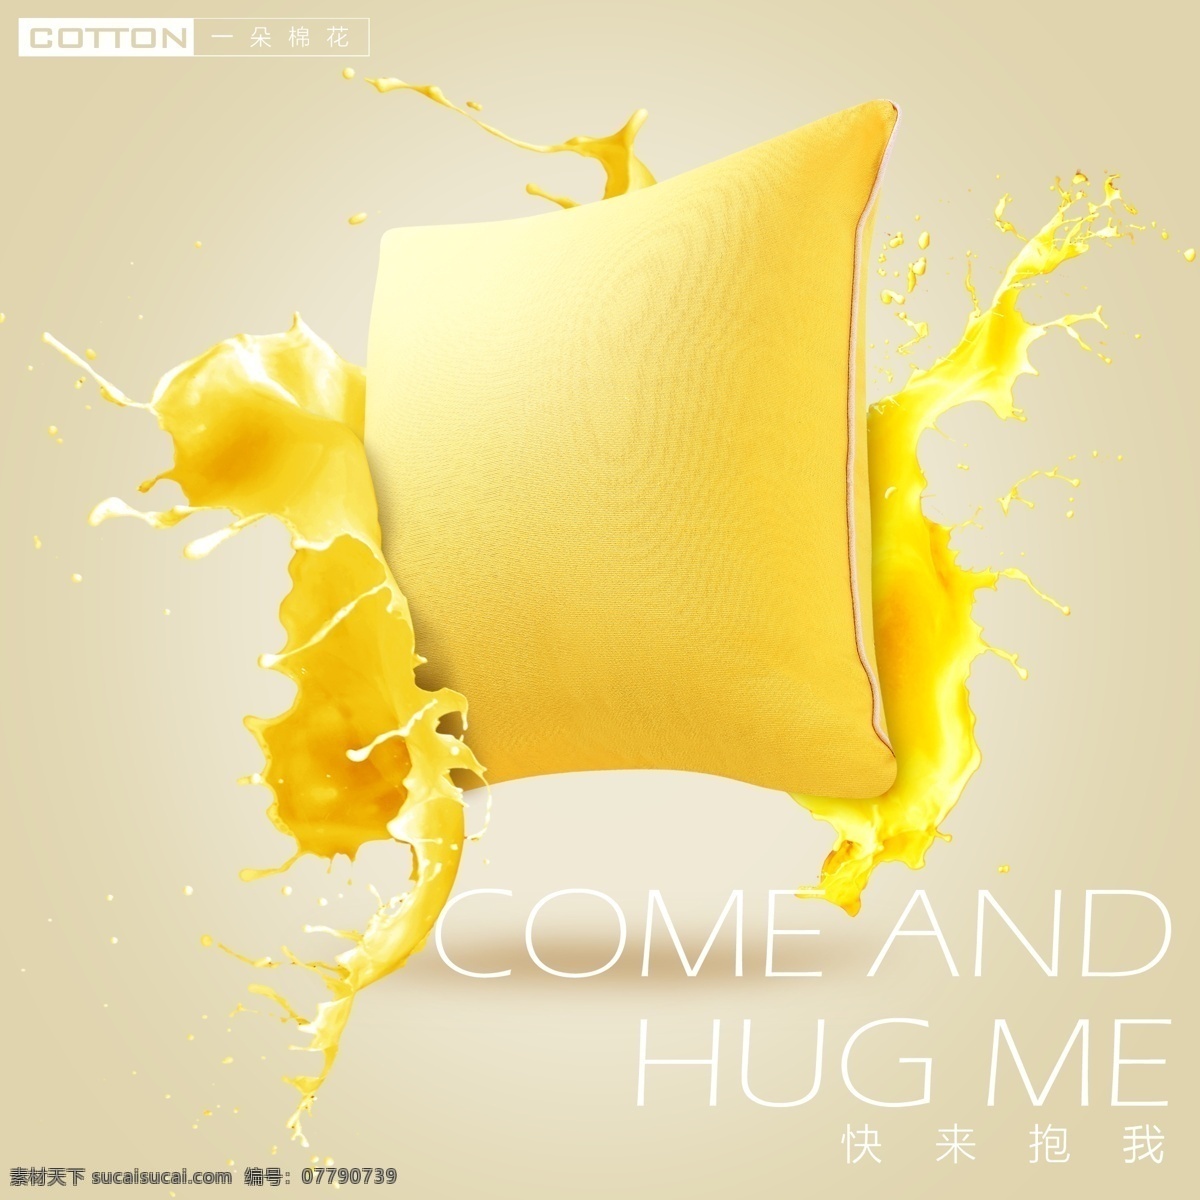 黄色抱枕 黄色 抱枕 动态 水 液体 动感 色彩 颜色 靠枕 创意 灵感 想法 牛奶 果汁